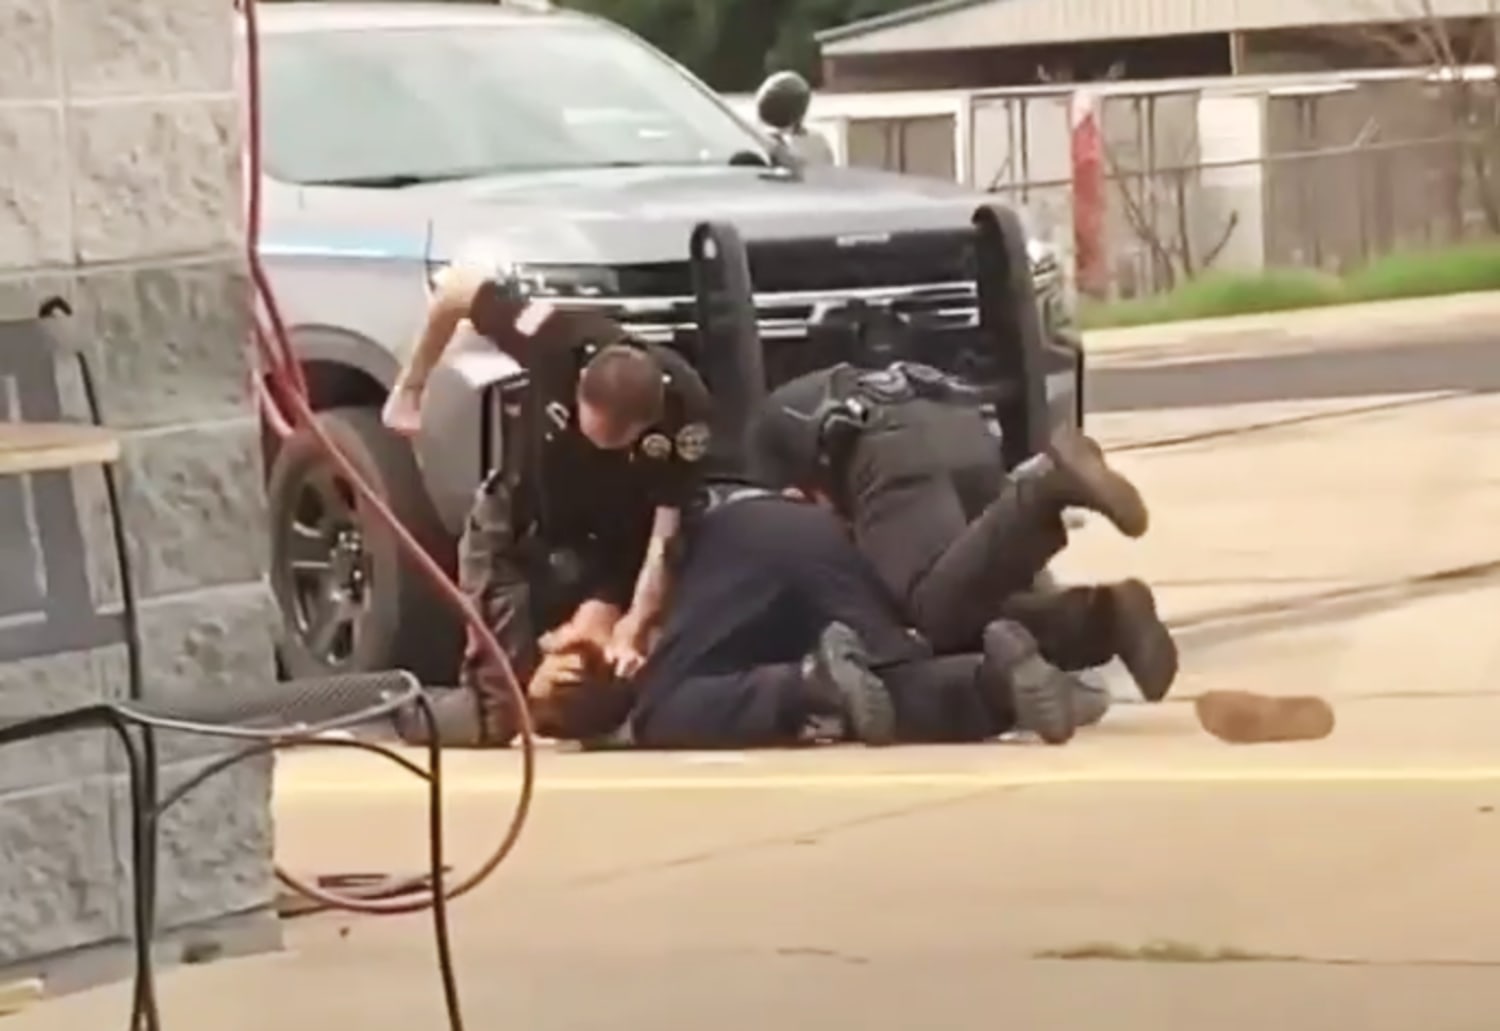 beaten in violent arrest in Arkansas sues officers